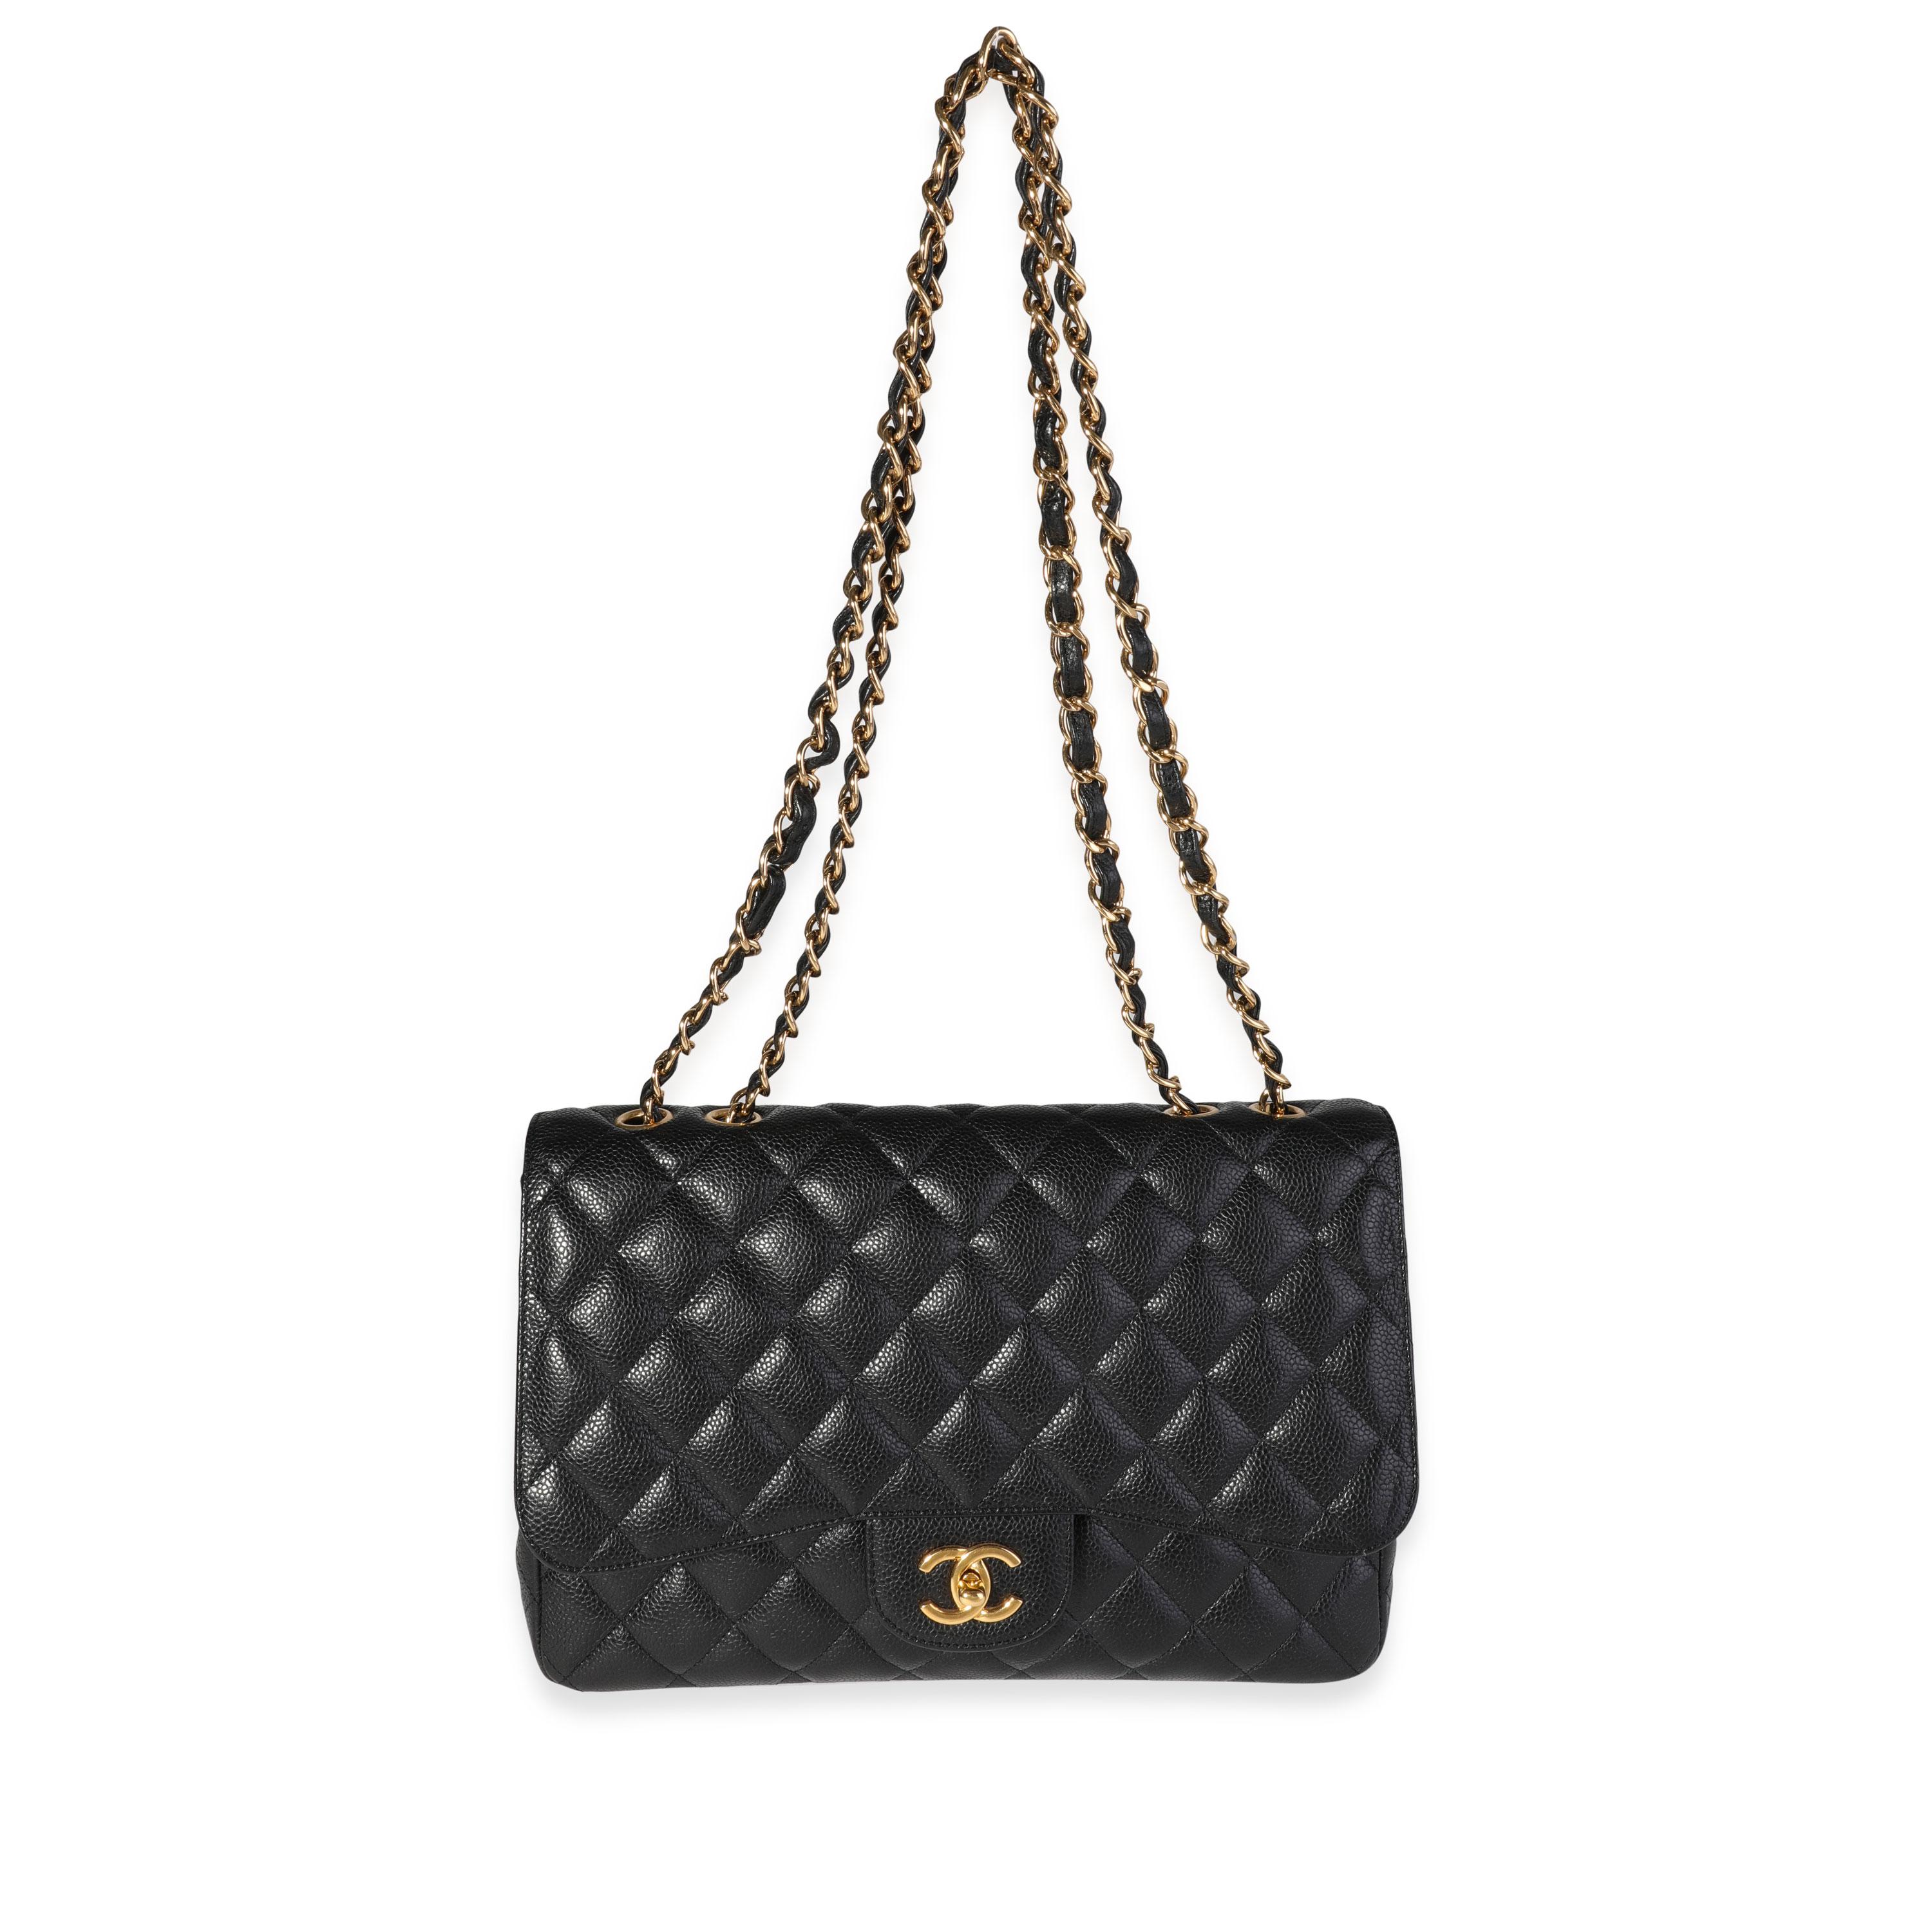 Titre de la liste : Chanel Black Quilted Caviar Jumbo Classic Single Flap Bag
SKU : 119034
MSRP : 9500.00
Condit : D'occasion (3000)
Condition du sac à main : Très bon
Commentaires sur l'état : Rayures sur le matériel. Usure à l'intérieur.
Marque :